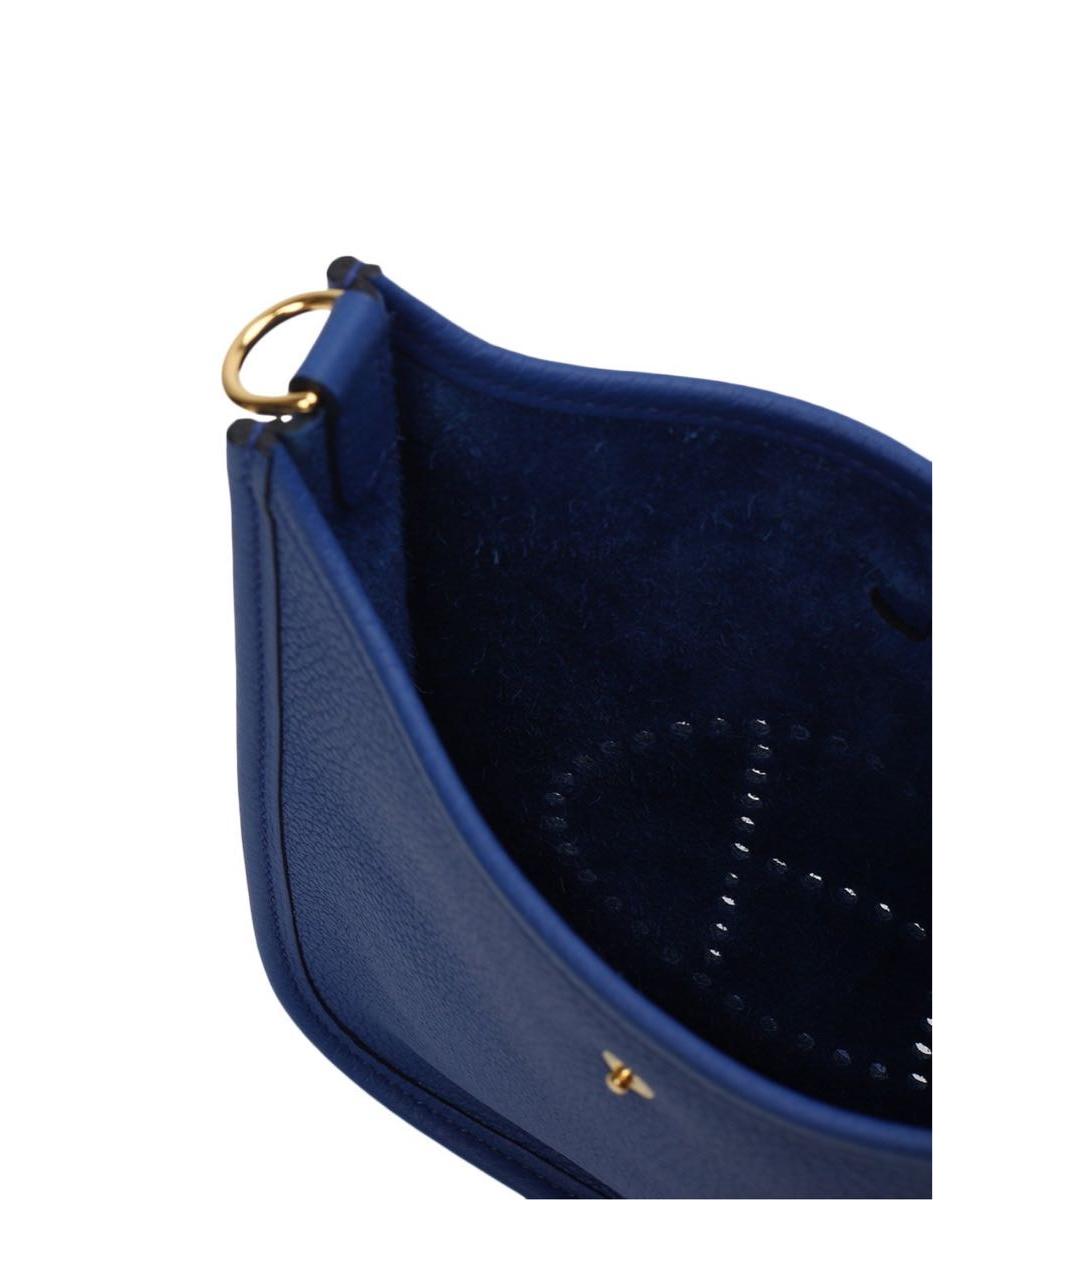 HERMES PRE-OWNED Синяя кожаная сумка через плечо, фото 7